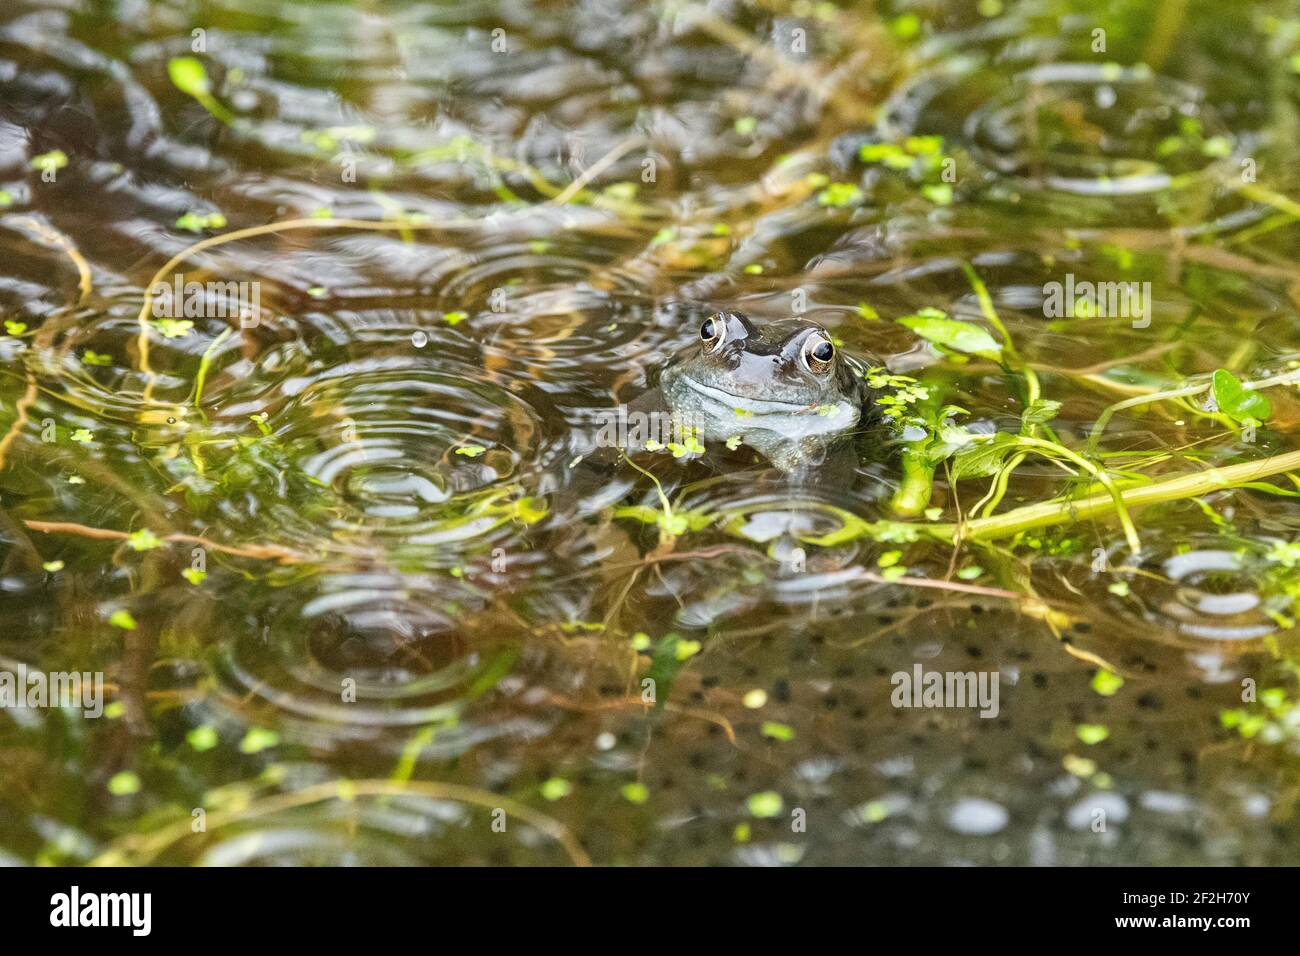 Frosch im Regen - gewöhnlicher Frosch (Rana temporaria) umgeben von Regentropfen und Frogspawn im Frühjahr - Schottland, Großbritannien Stockfoto